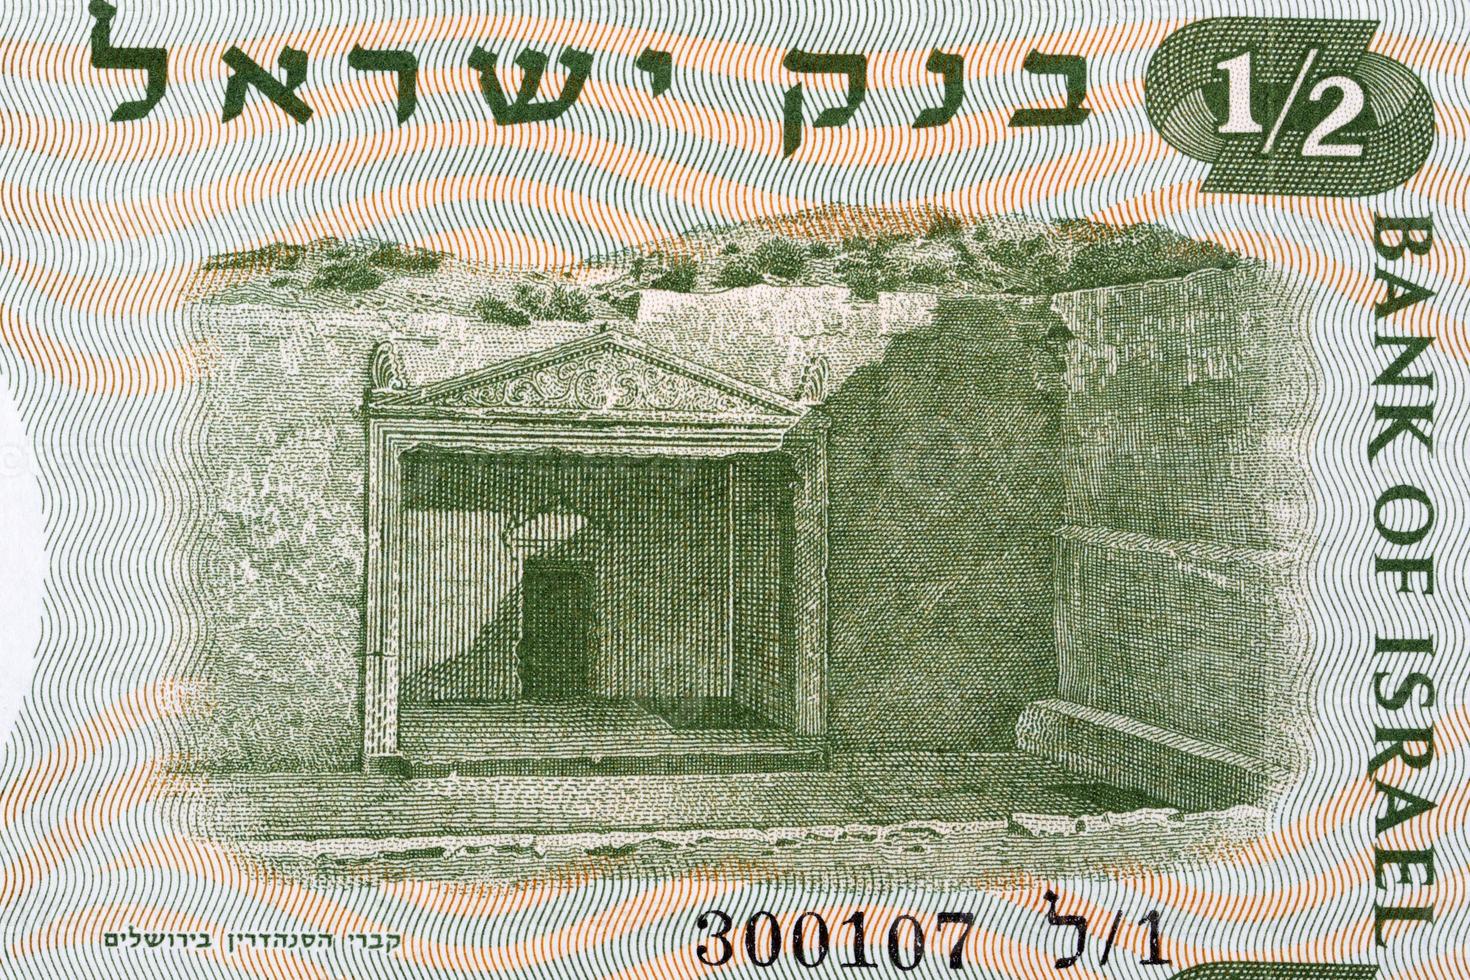 tombe di il sinedrio a partire dal vecchio israeliano i soldi foto